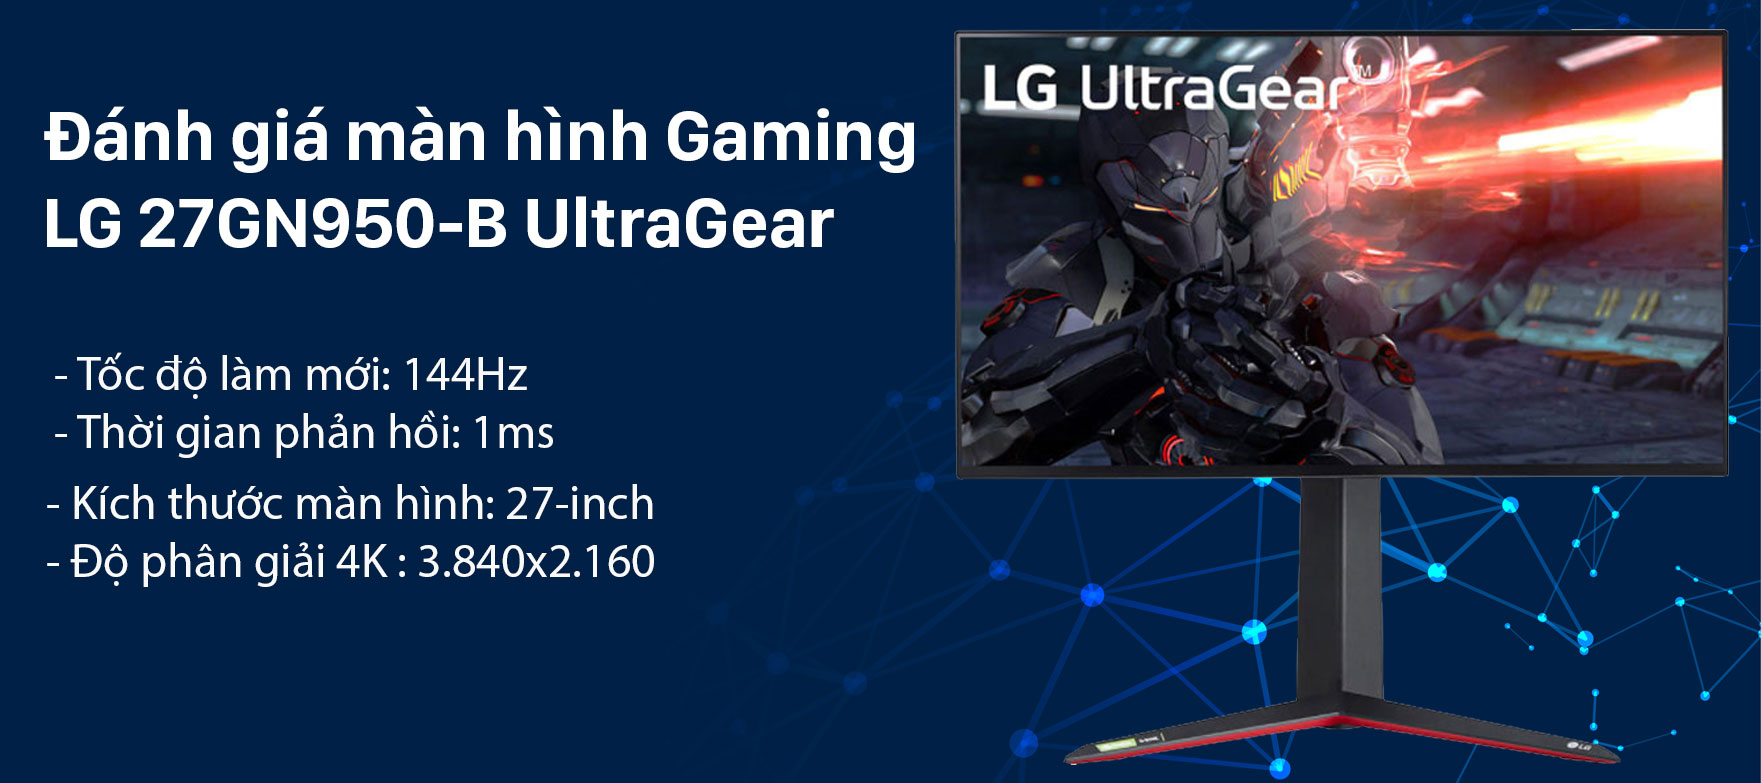 Đánh giá màn hình LG Ultragear 27GN950 4K : Màn hình sẽ đáp ứng yêu cầu của game thủ